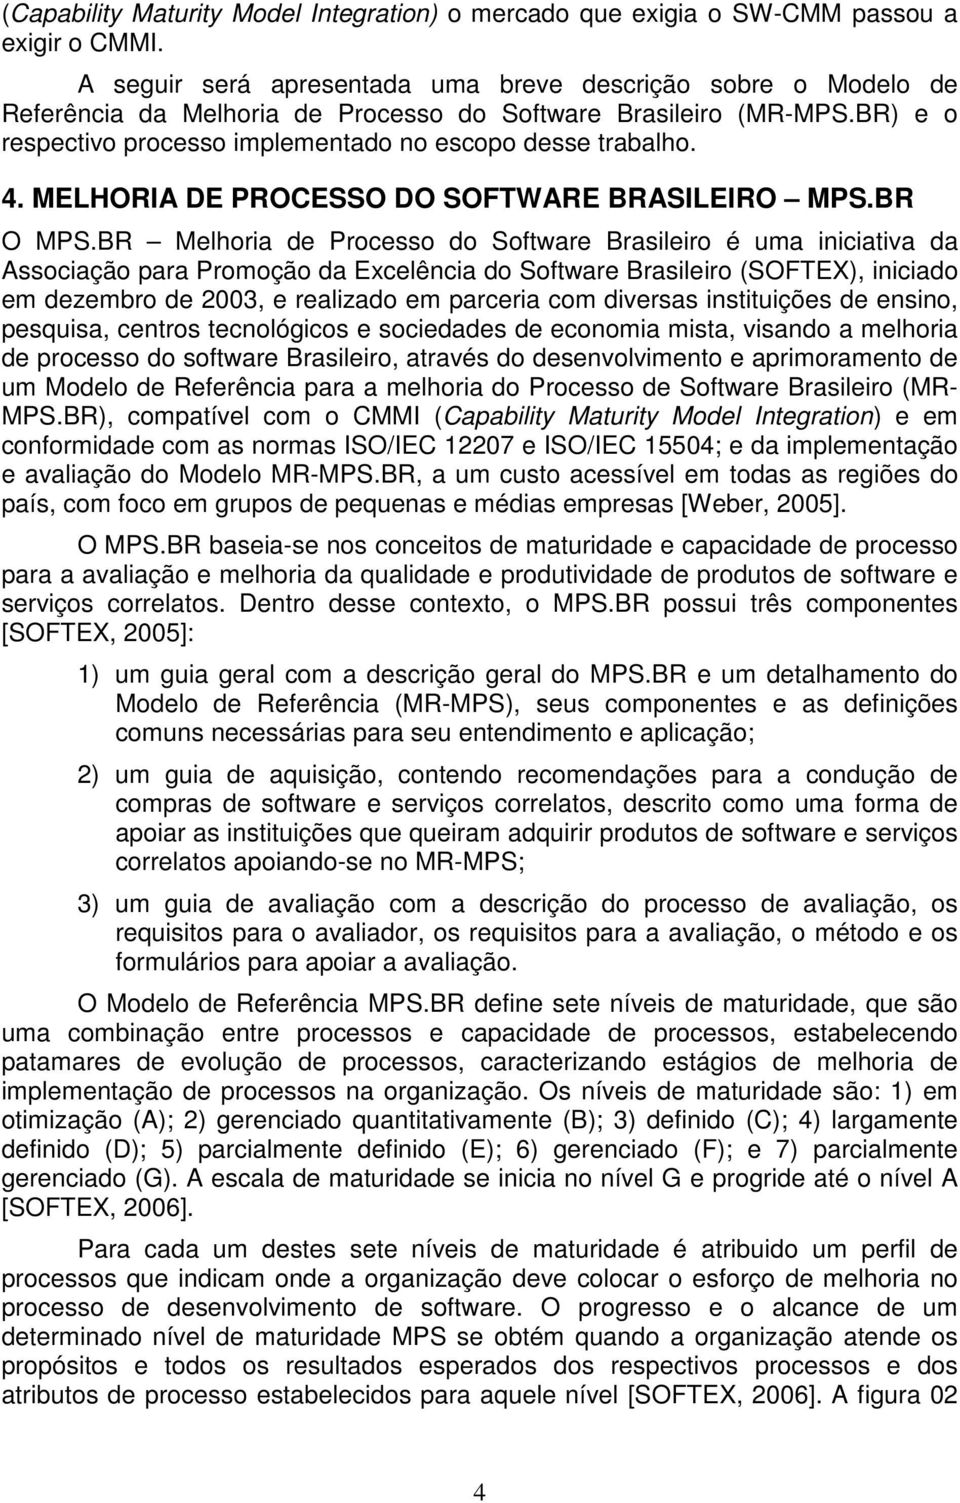 MELHORIA DE PROCESSO DO SOFTWARE BRASILEIRO MPS.BR O MPS.